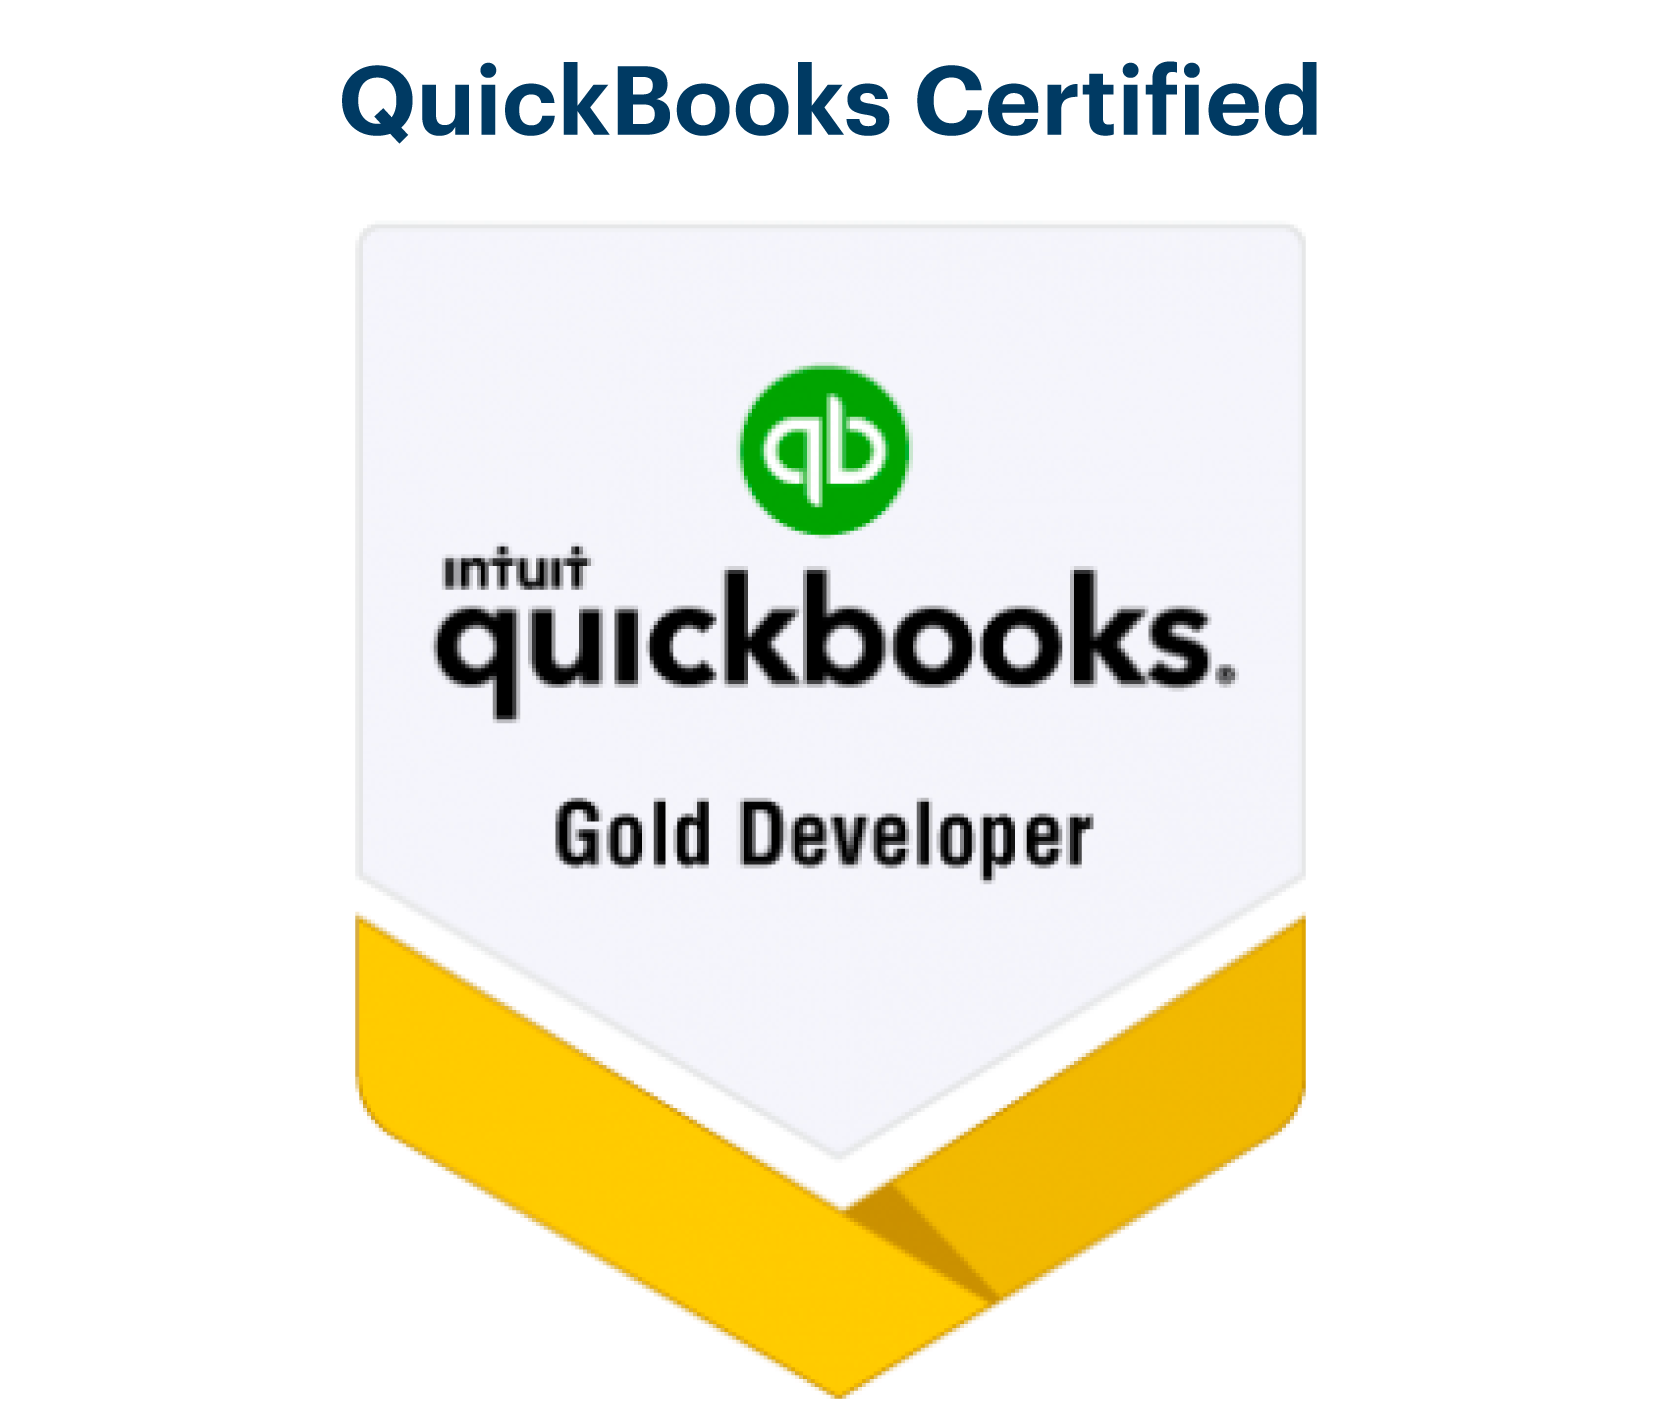 quickbooks gold developer badge